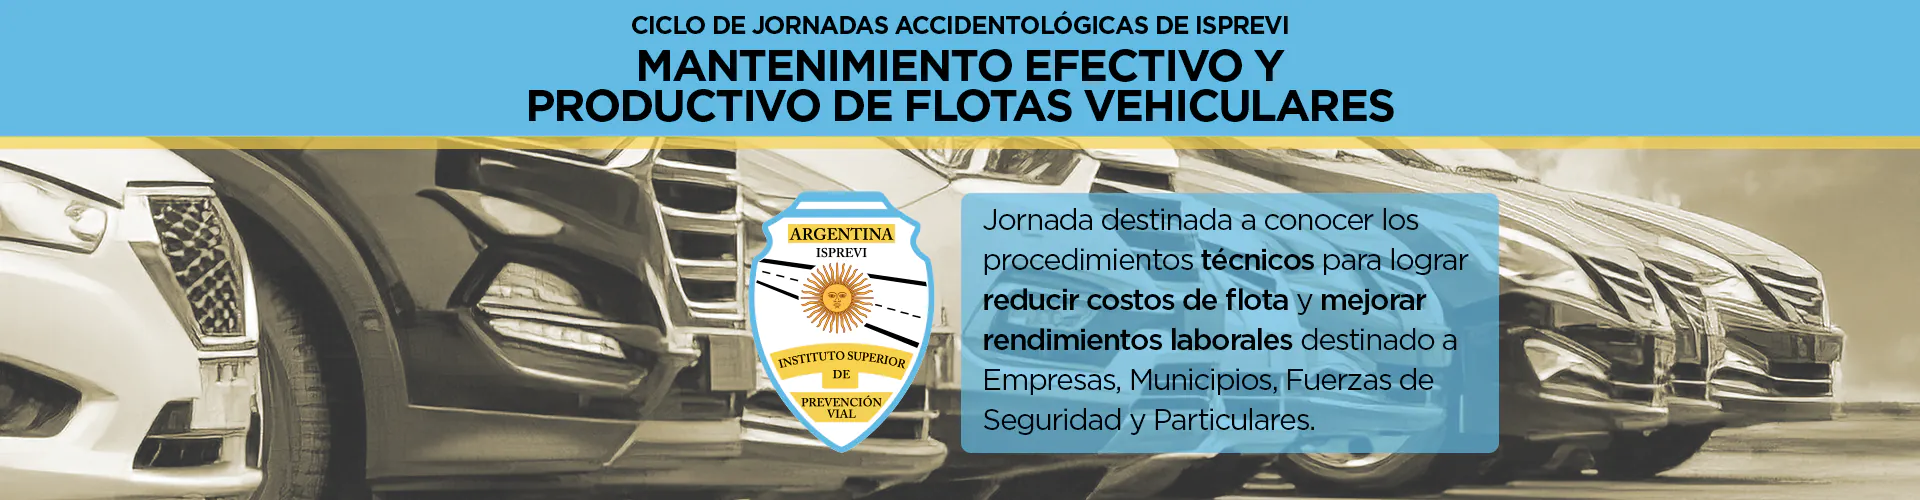 isprevi_mantenimiento_de_flotas_vehiculares